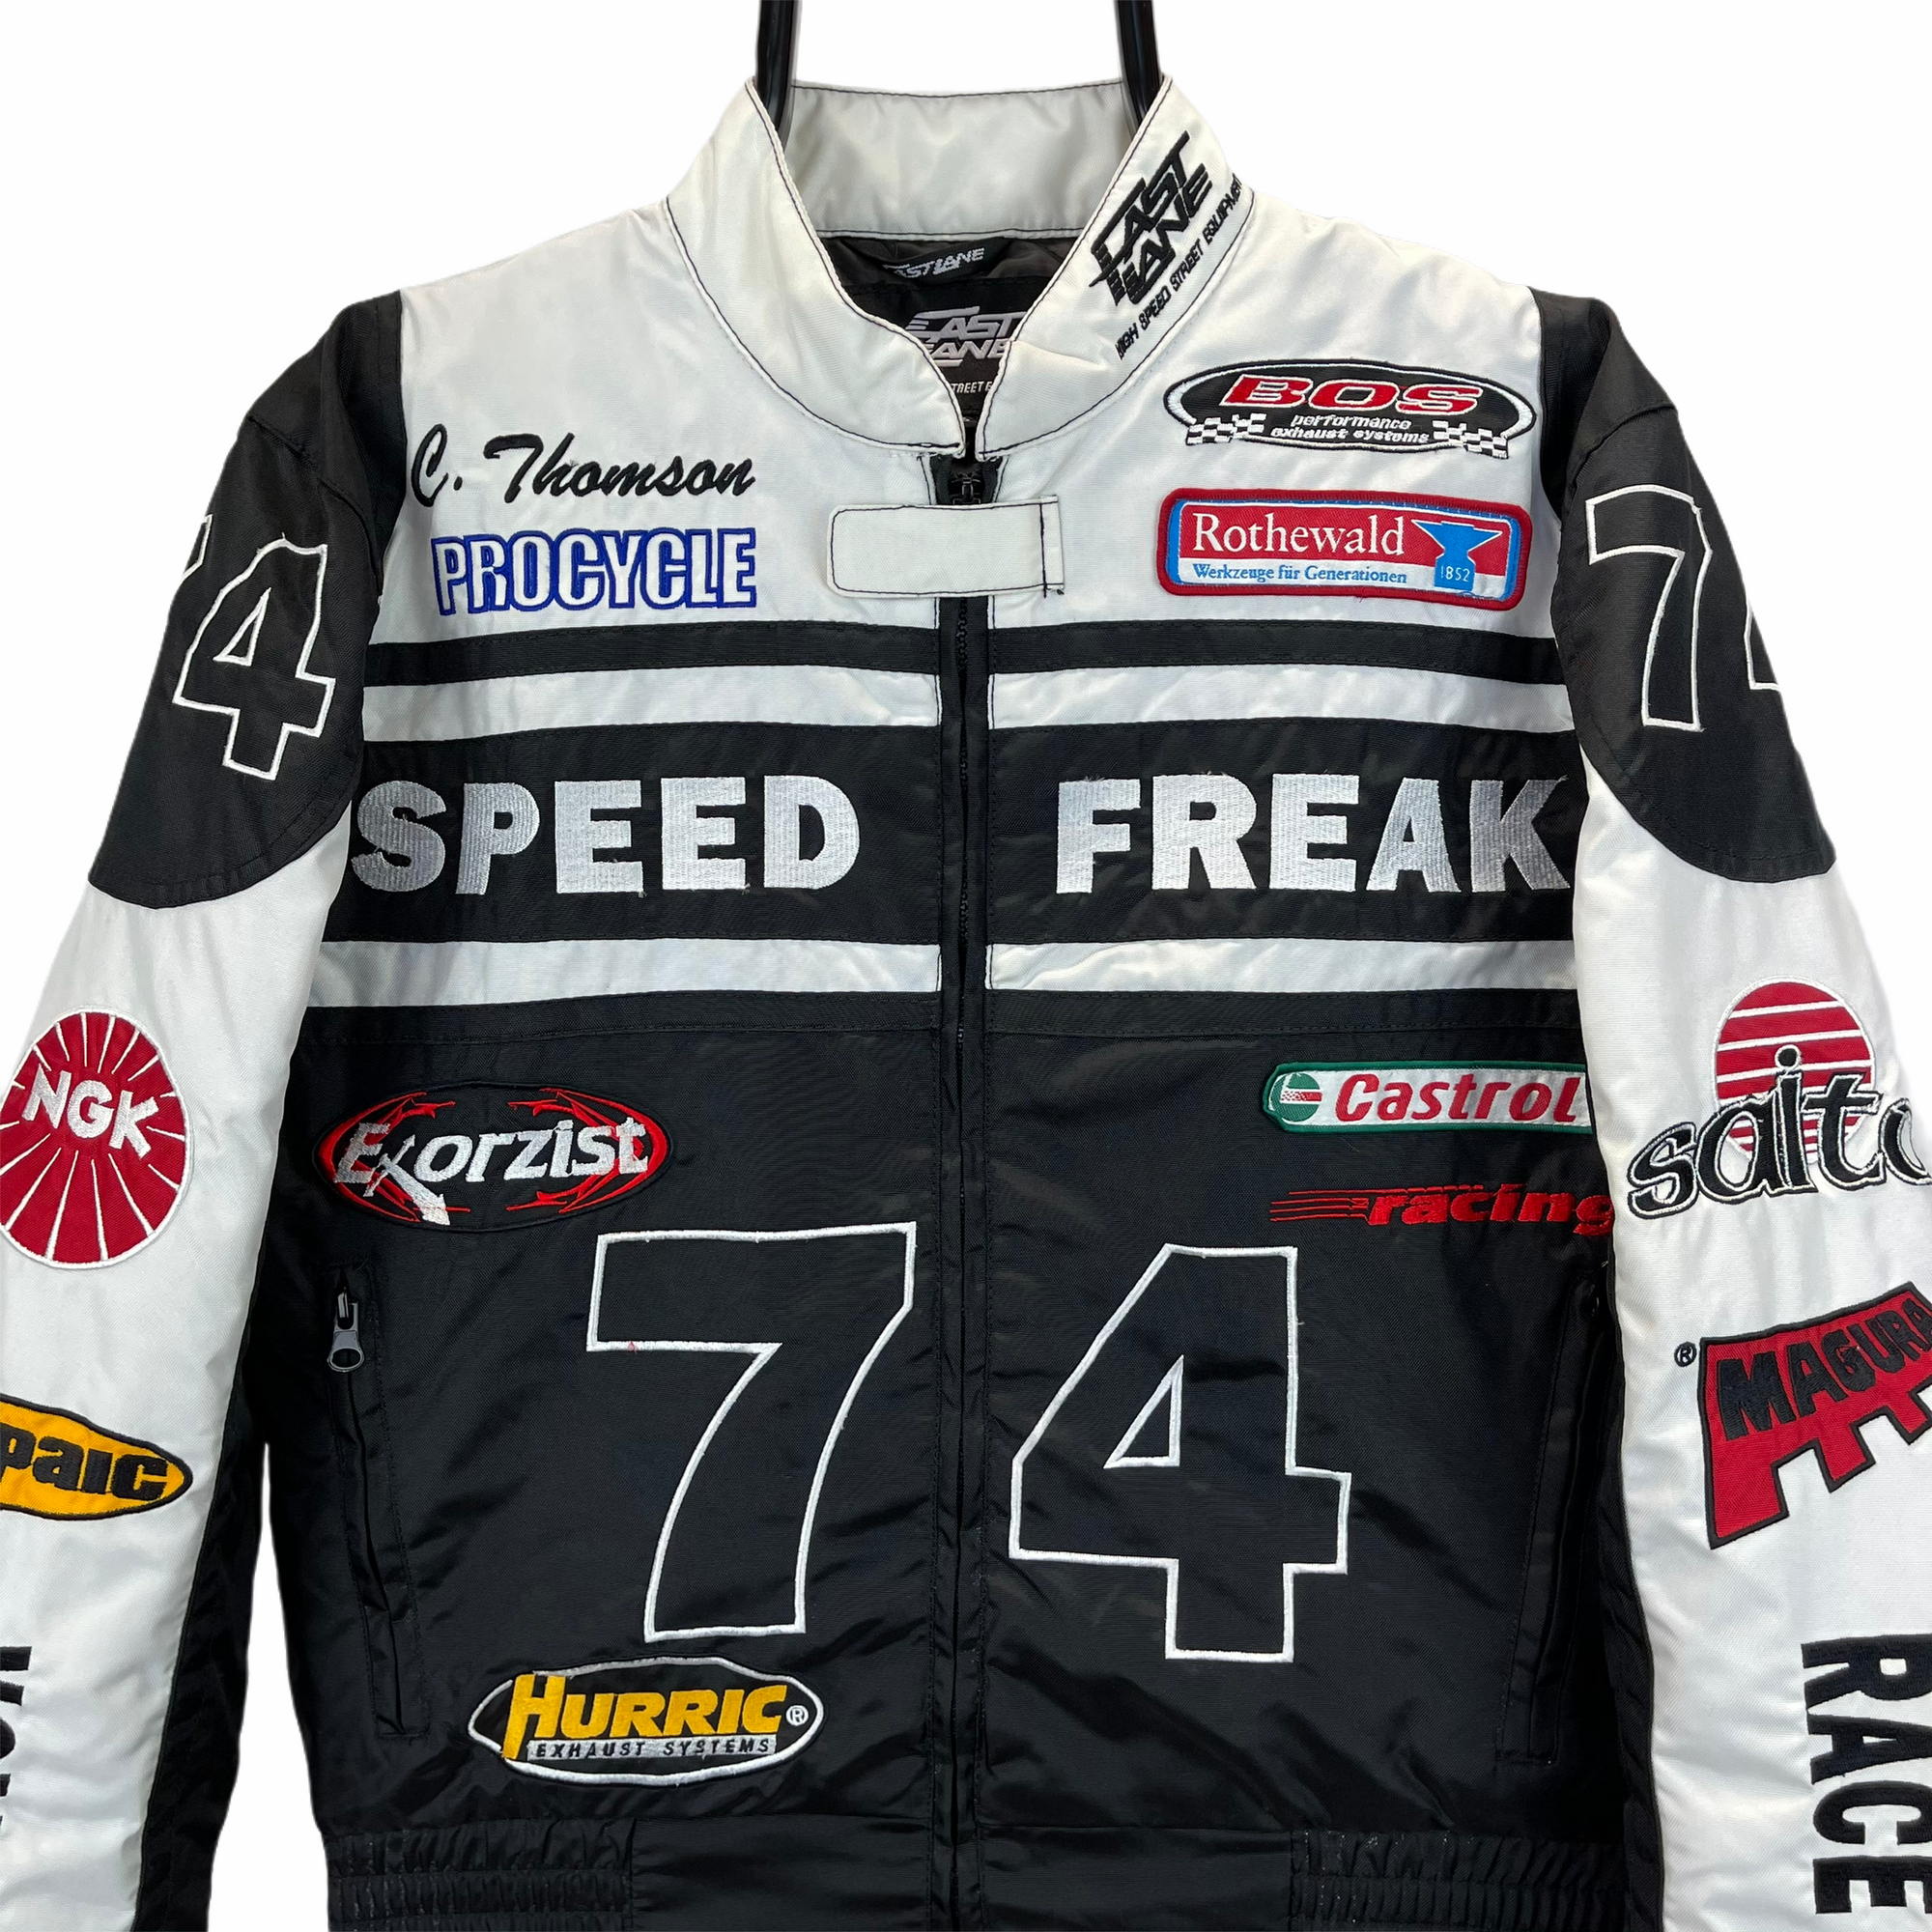 Vintage 'Speed Freak' Racing Jacket - Men's XS/Women's Small